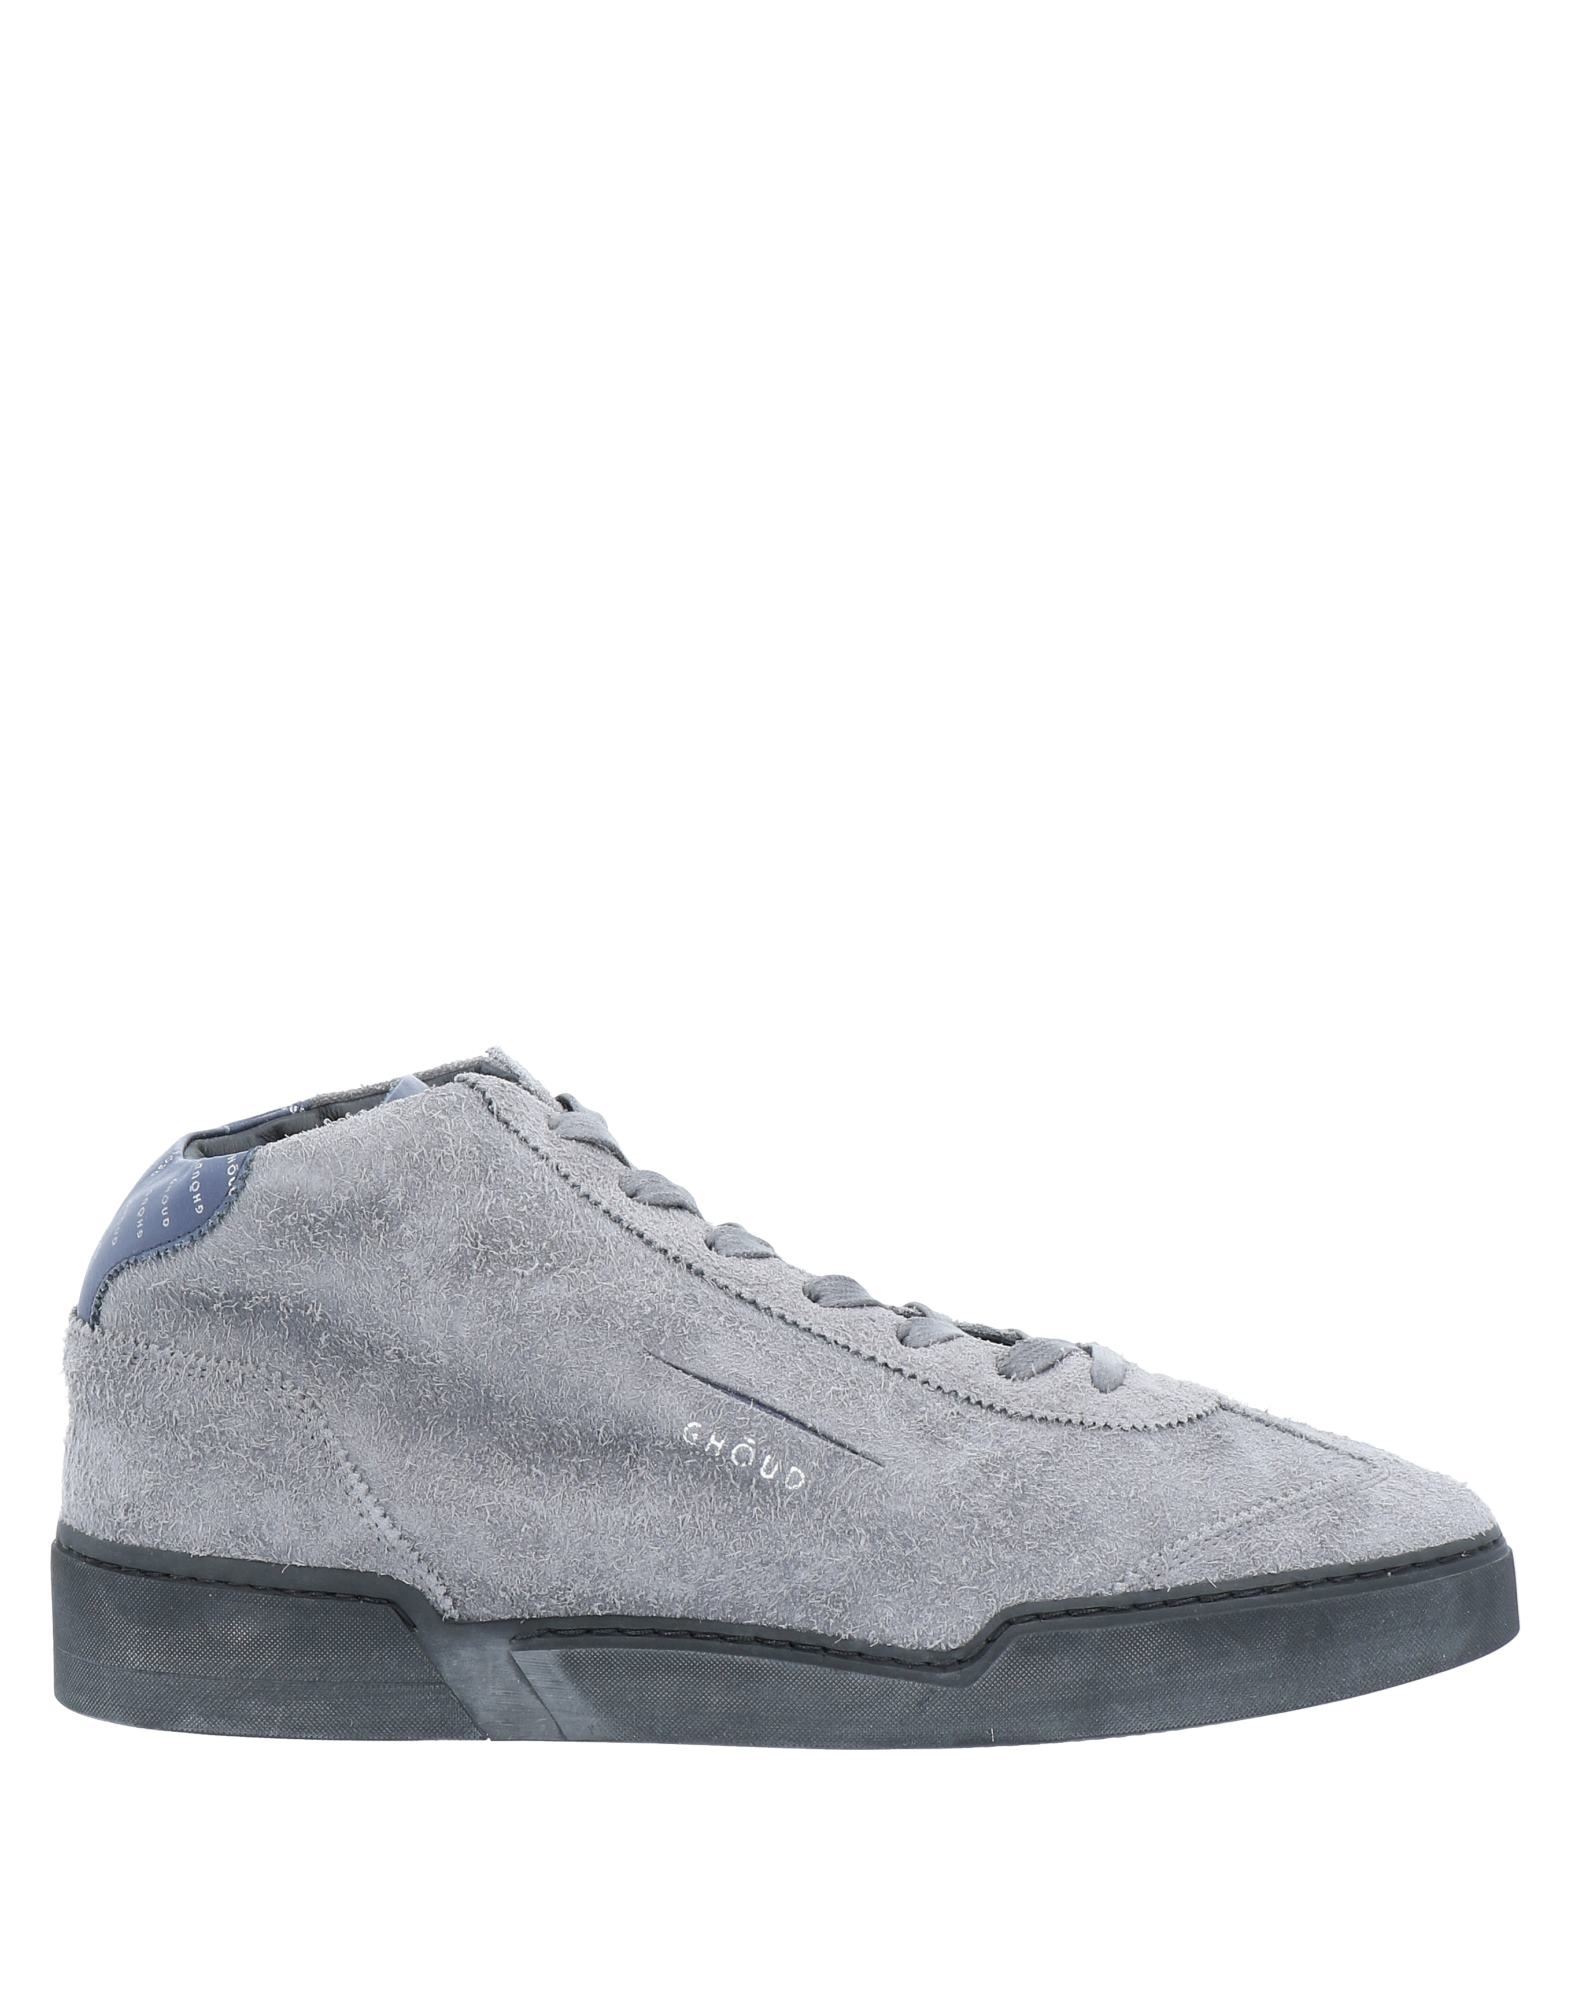 Ghoud Venice Sneakers In Grey